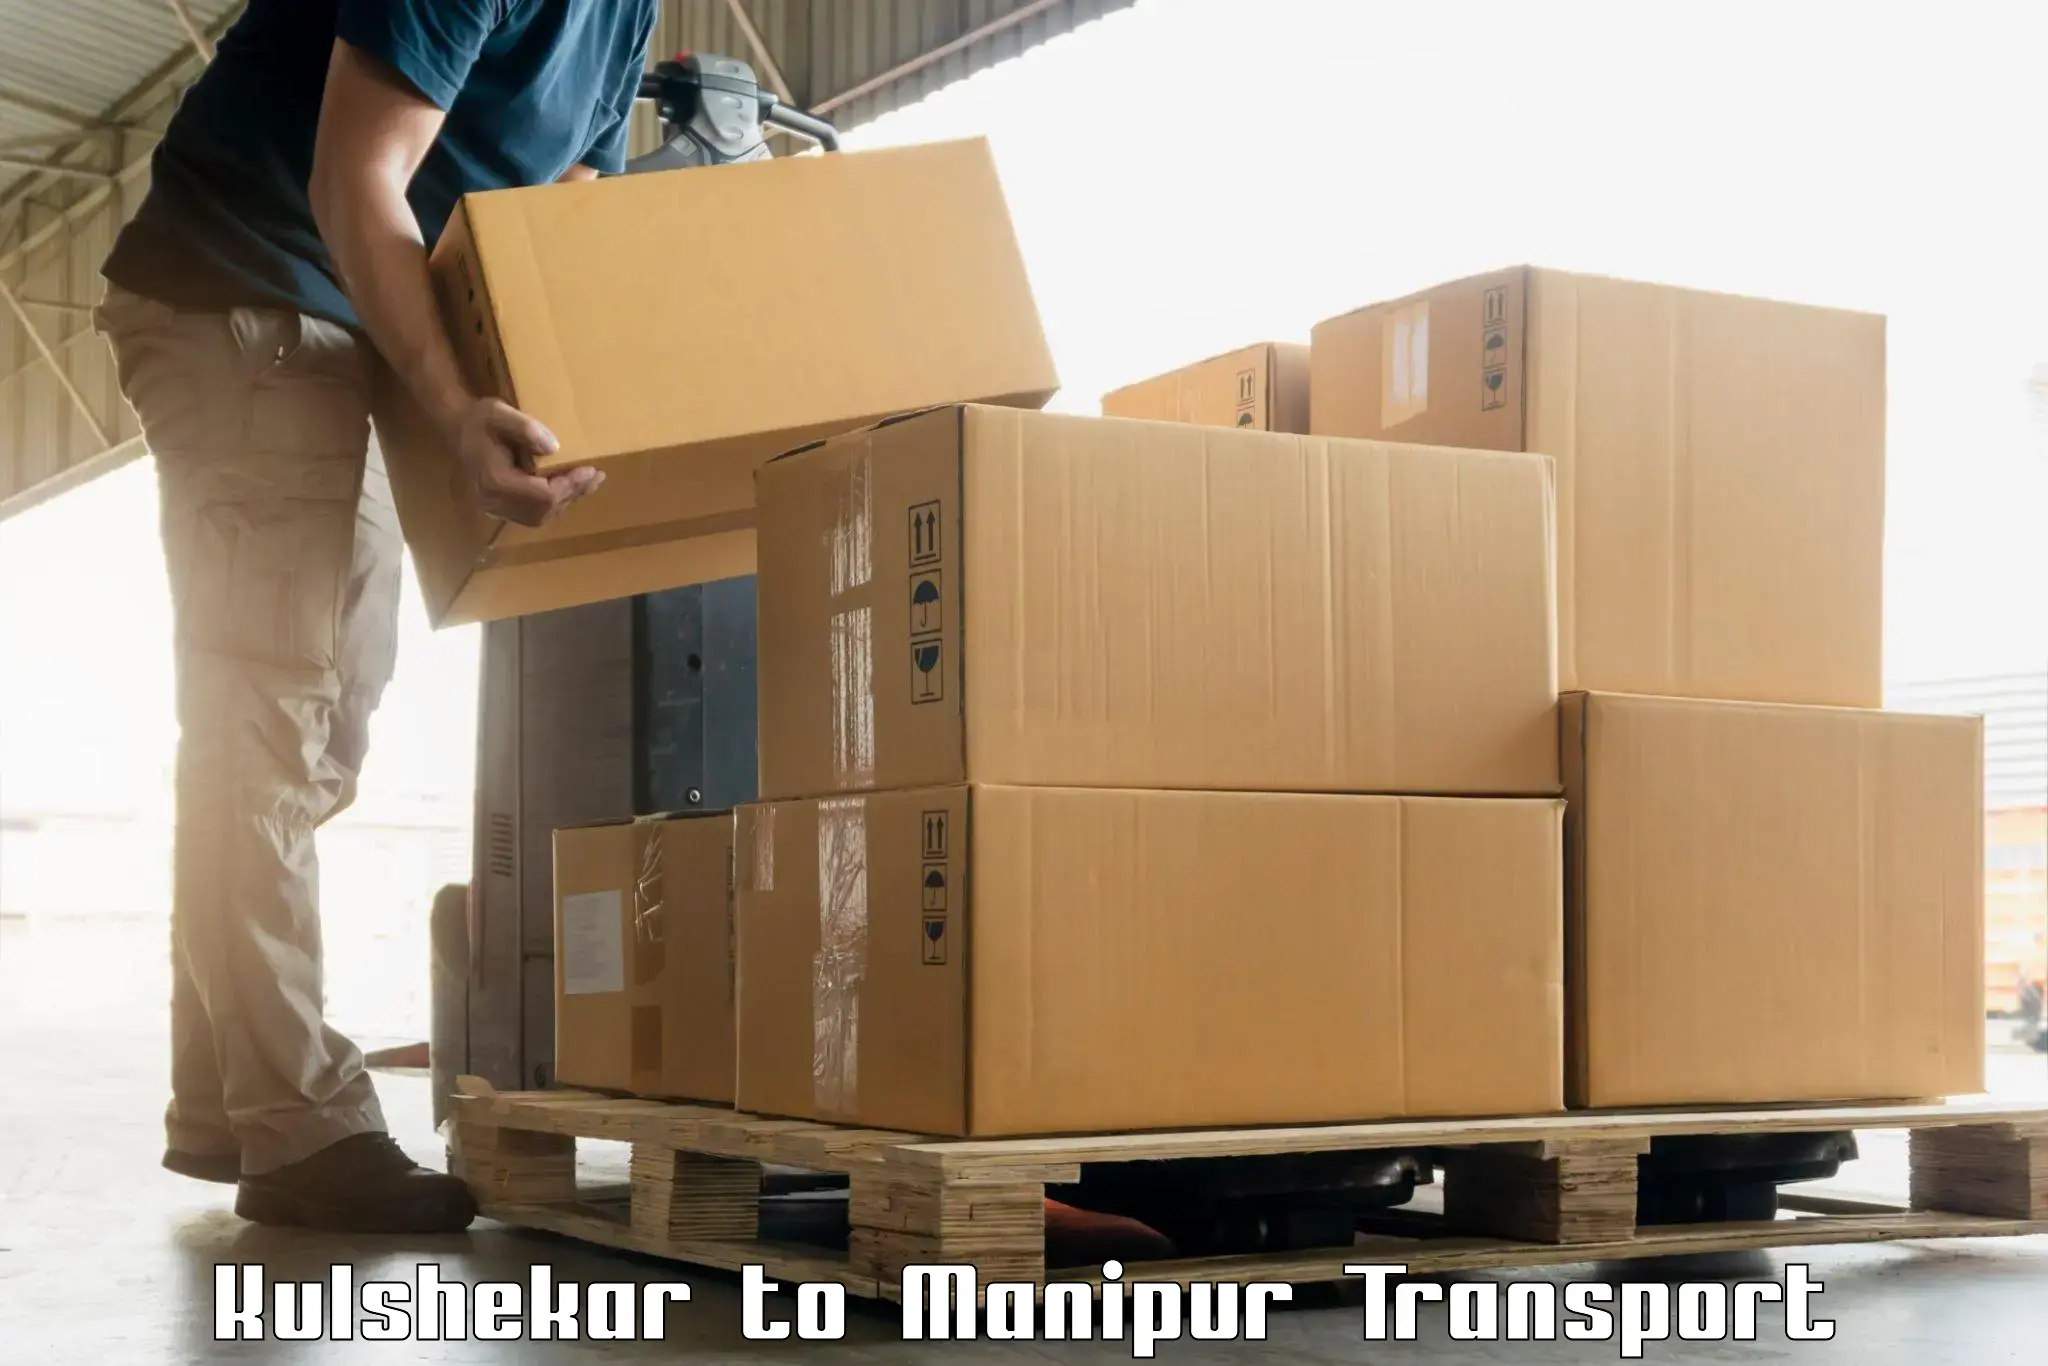 Two wheeler parcel service Kulshekar to Chandel